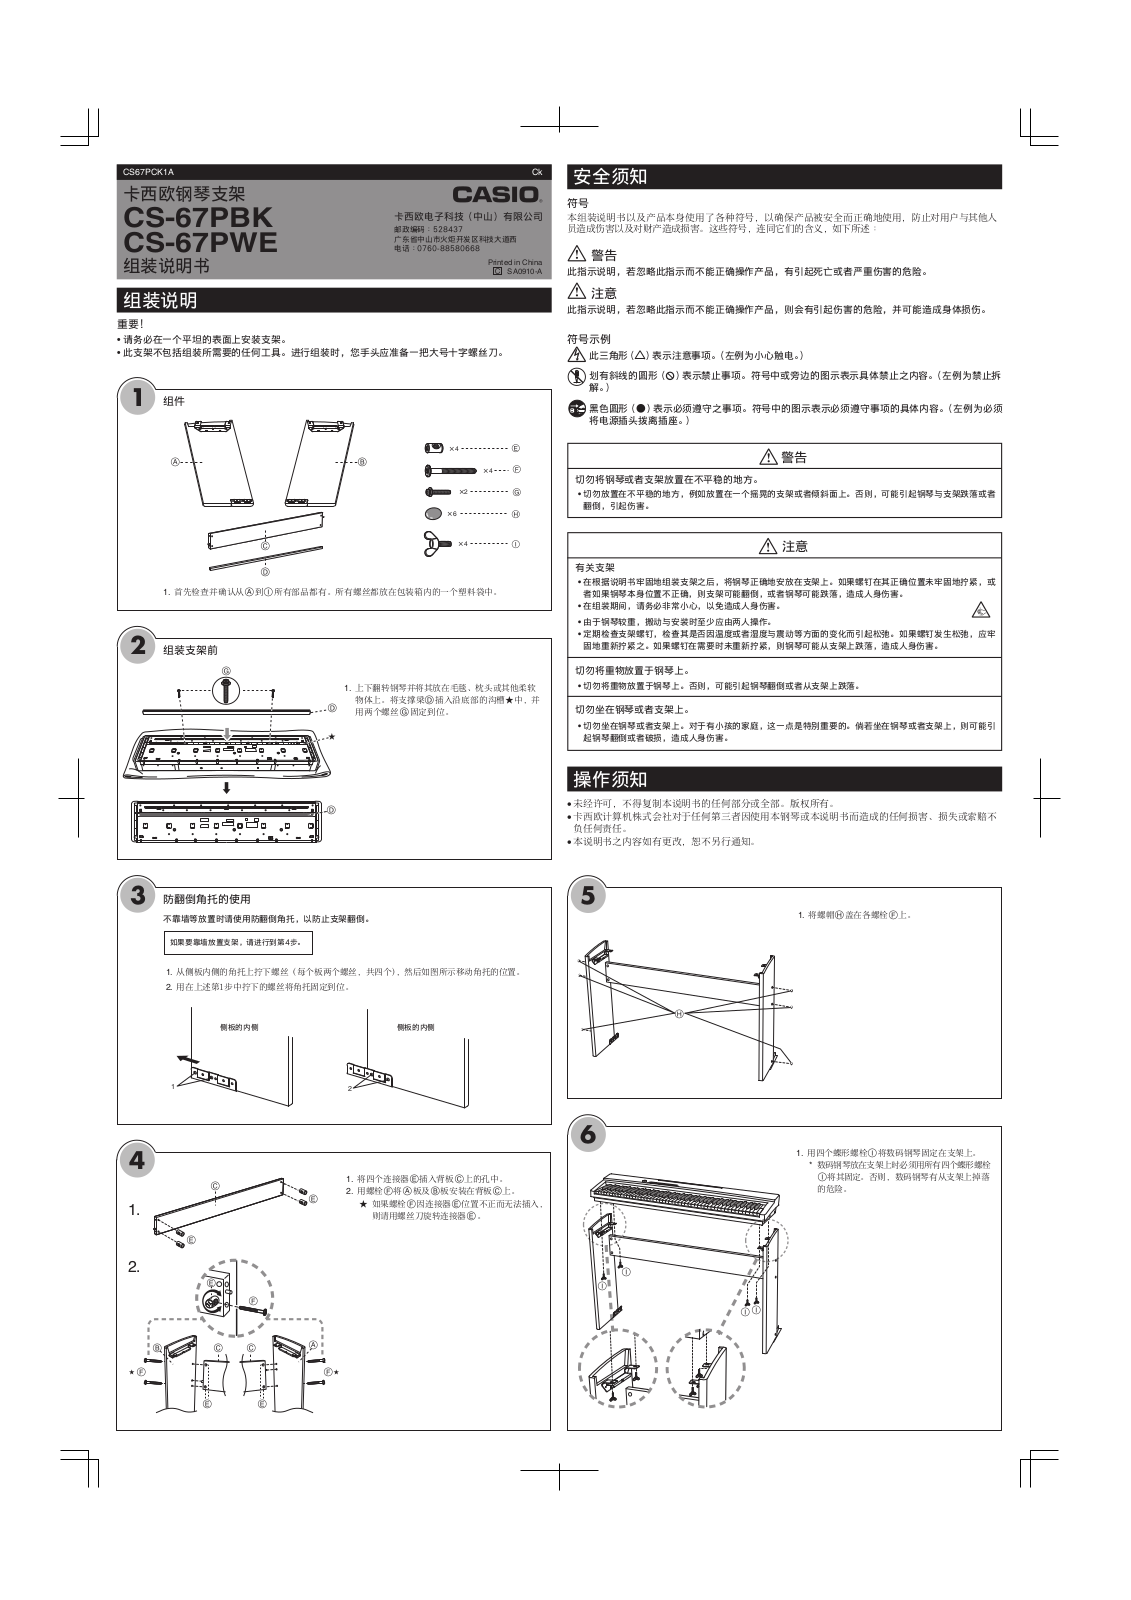 Casio CS-67PWE Owner's Manual